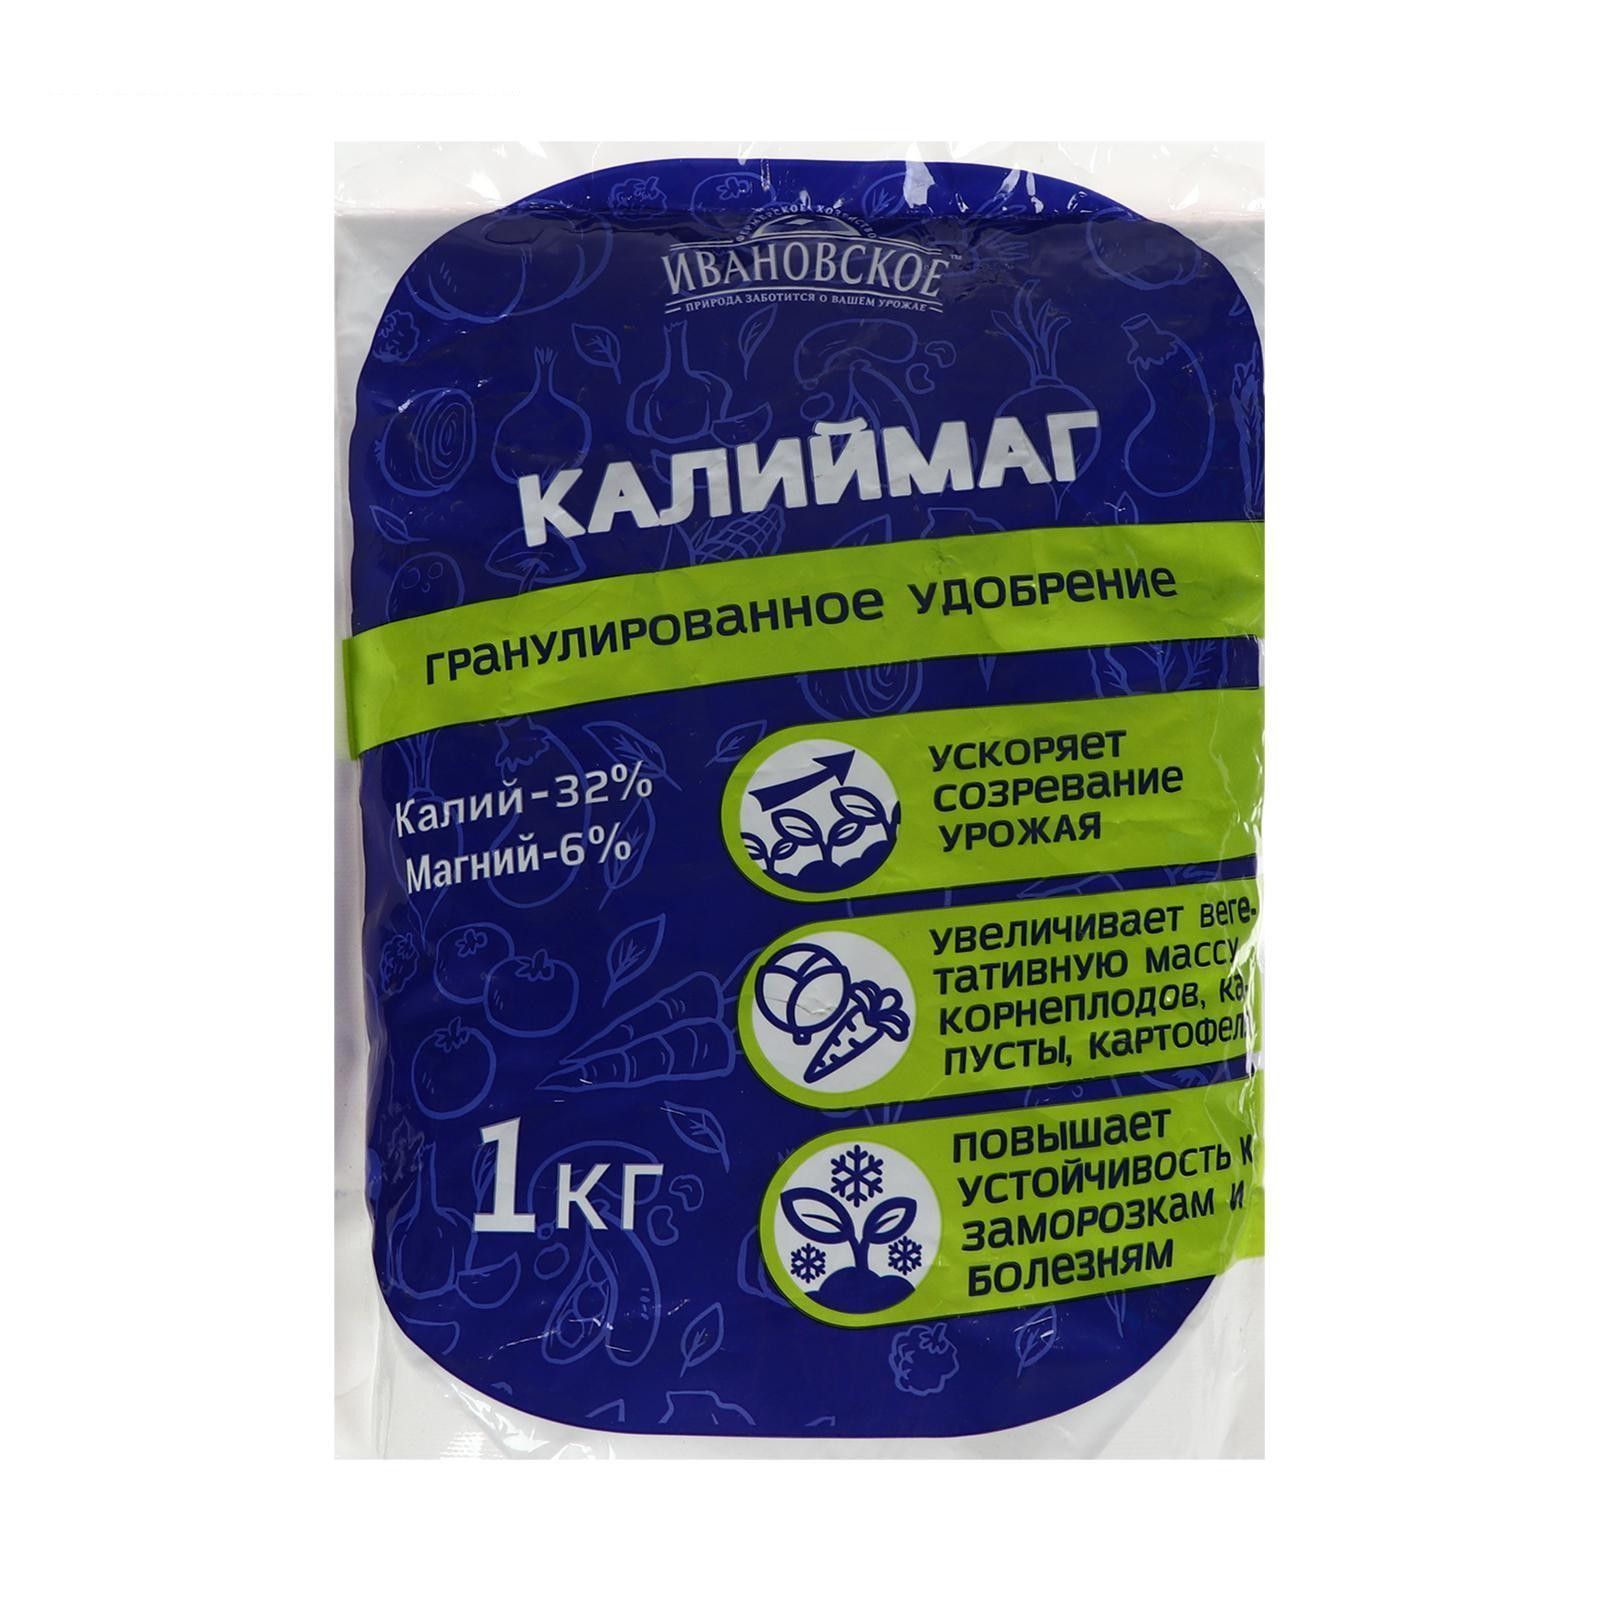 Калиймаг Ивановское, 1 кг